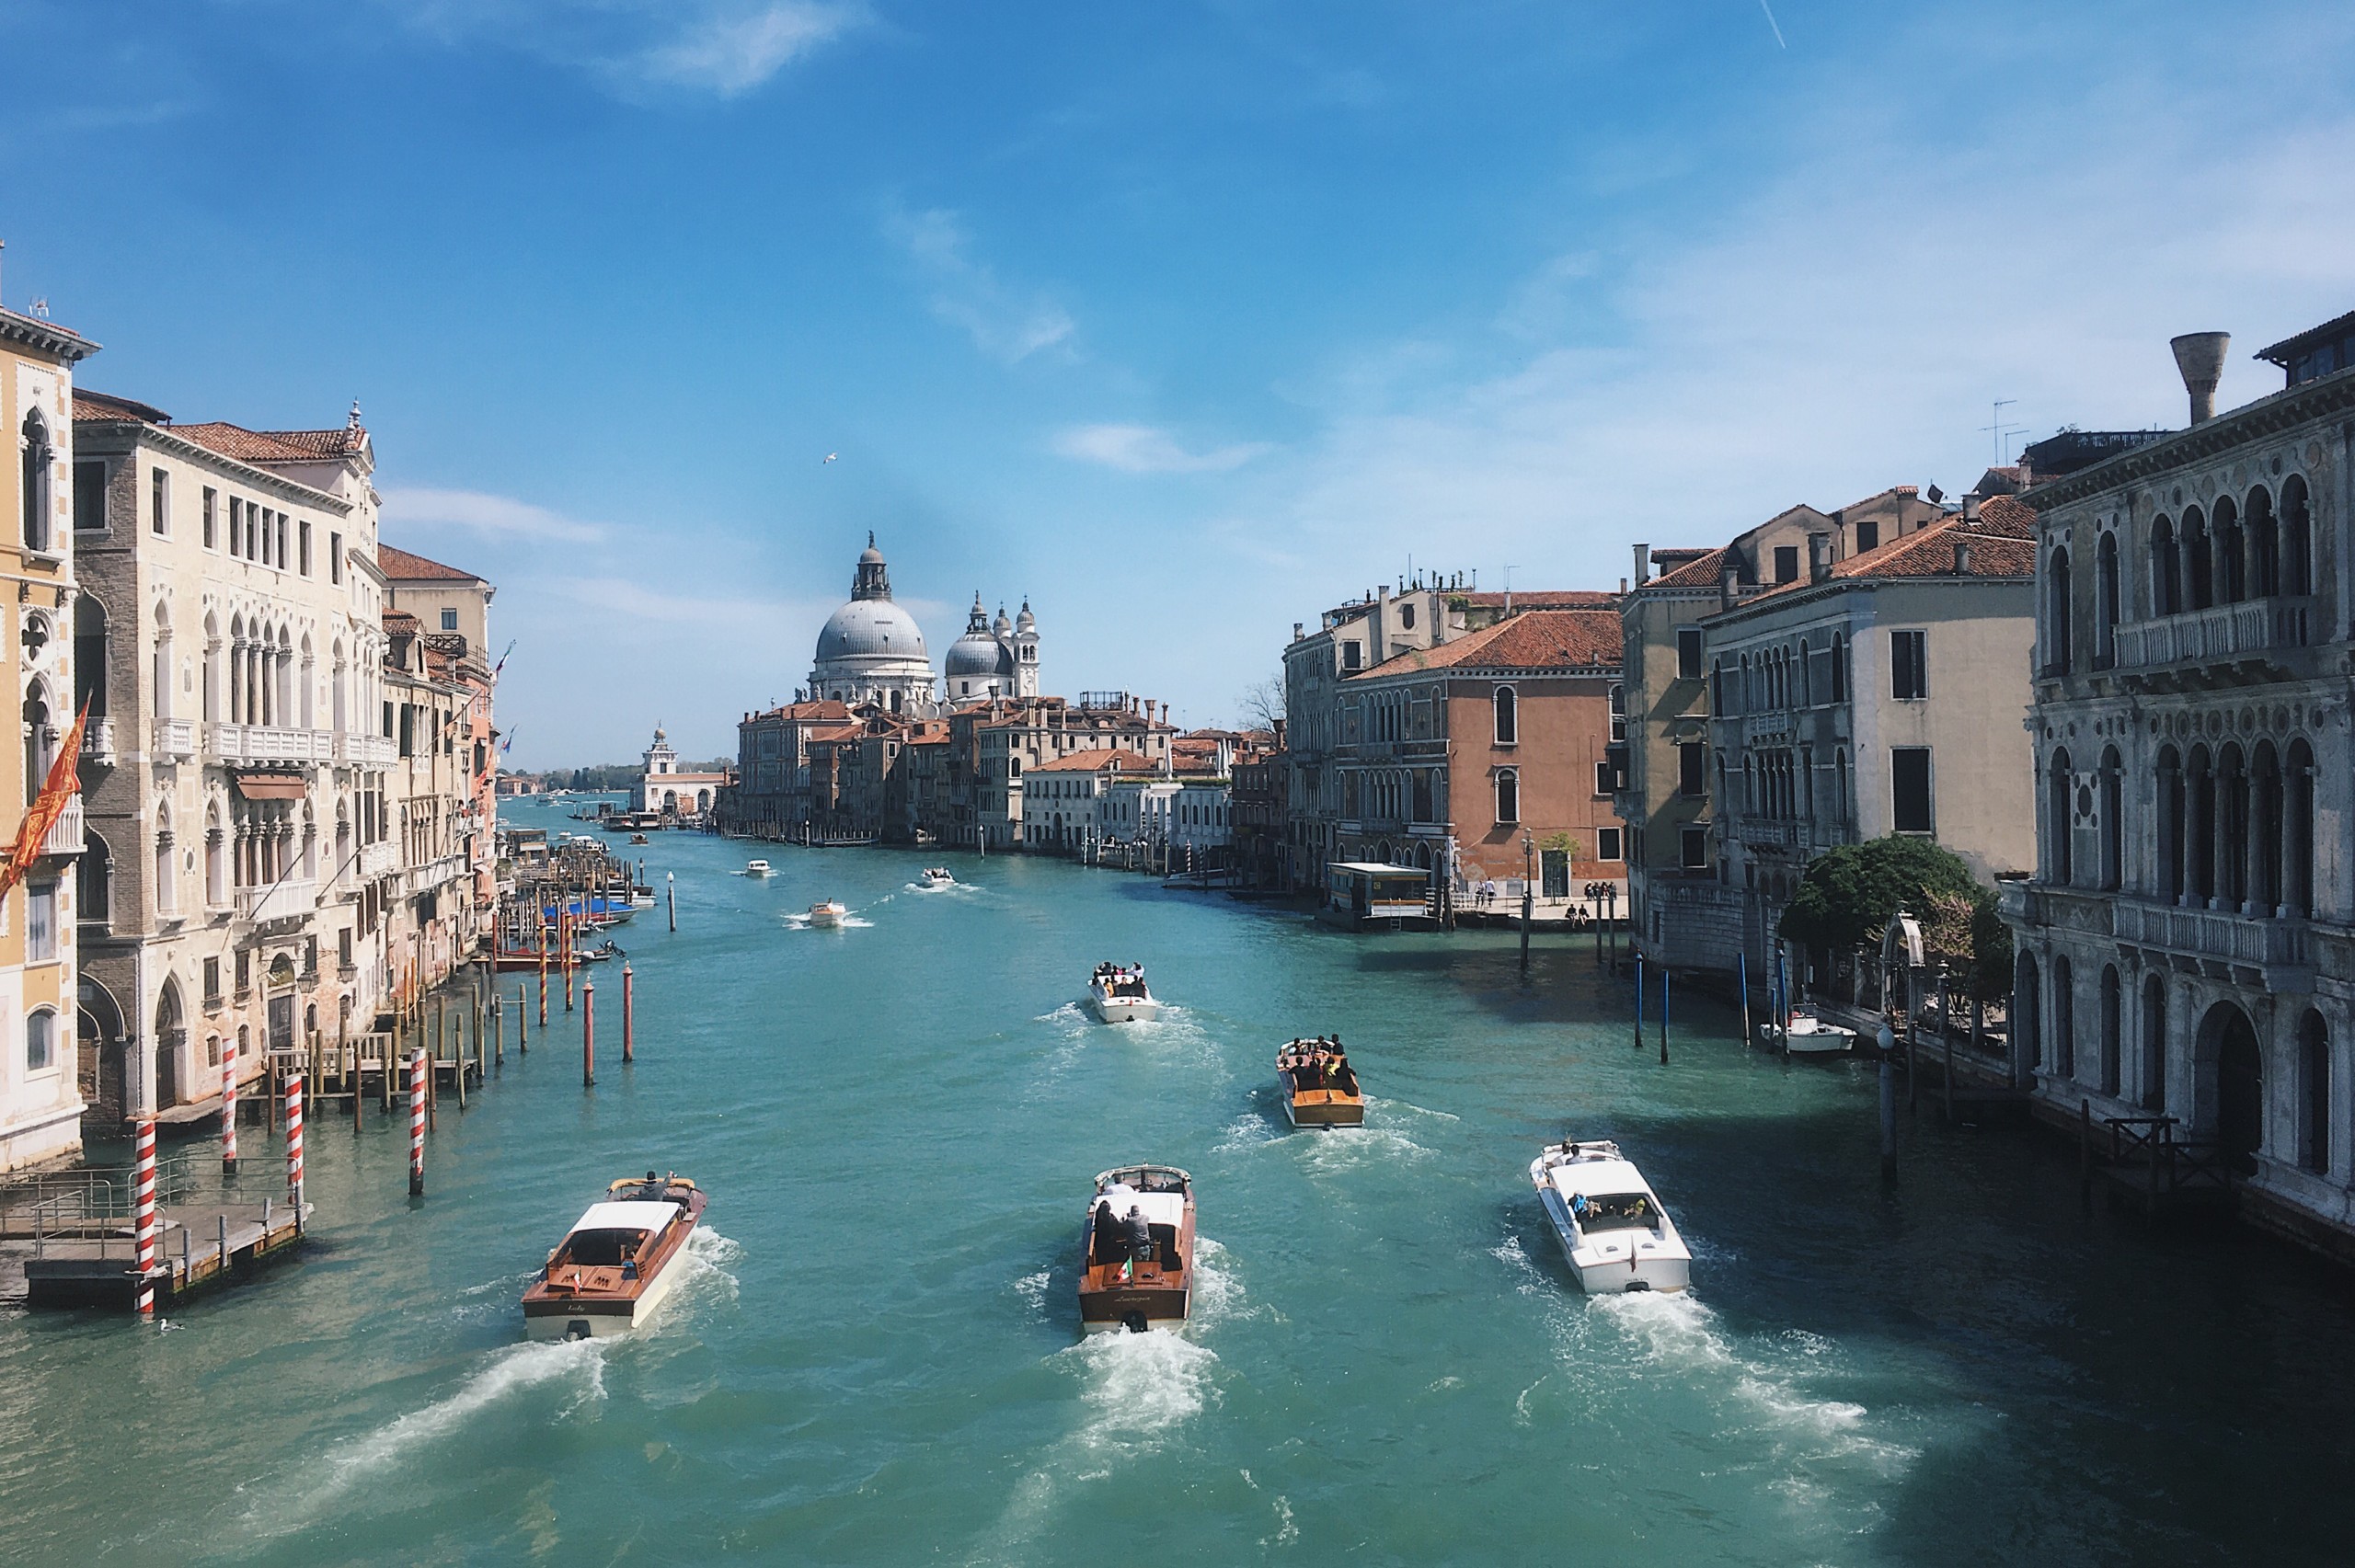 Ett stadslandskap från Venedig i färg. På bilden ser vi en bred å som rinner mot horisonten. På ån ser vi ett flertal båtar. Längs med ån står hus. Himlen är klarblå.